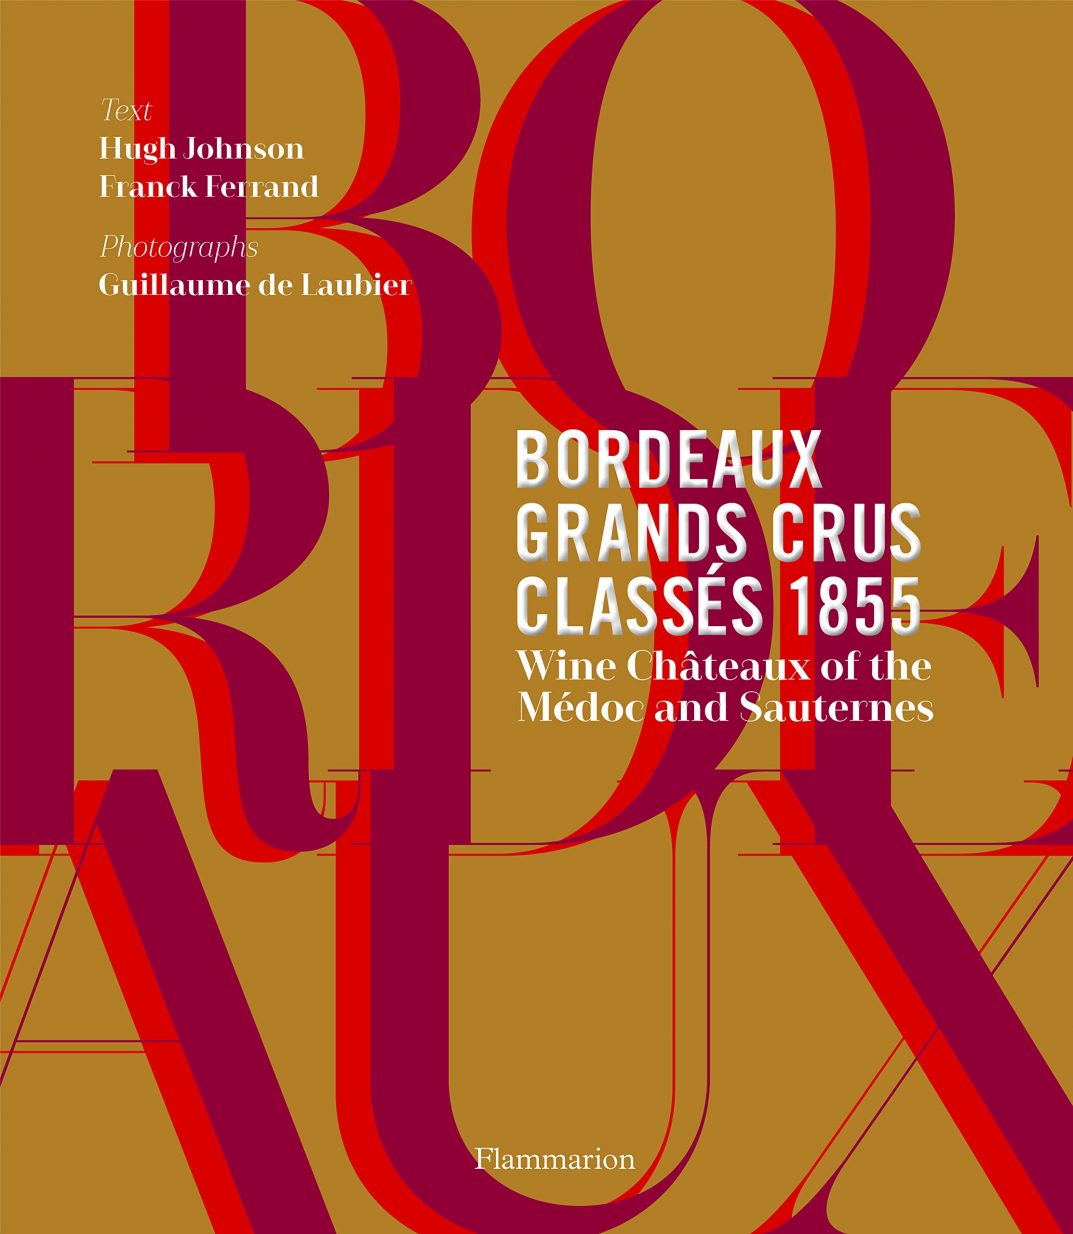 Book Review: Bordeaux Grands Crus Classés 1855 - - Association of Wine ...